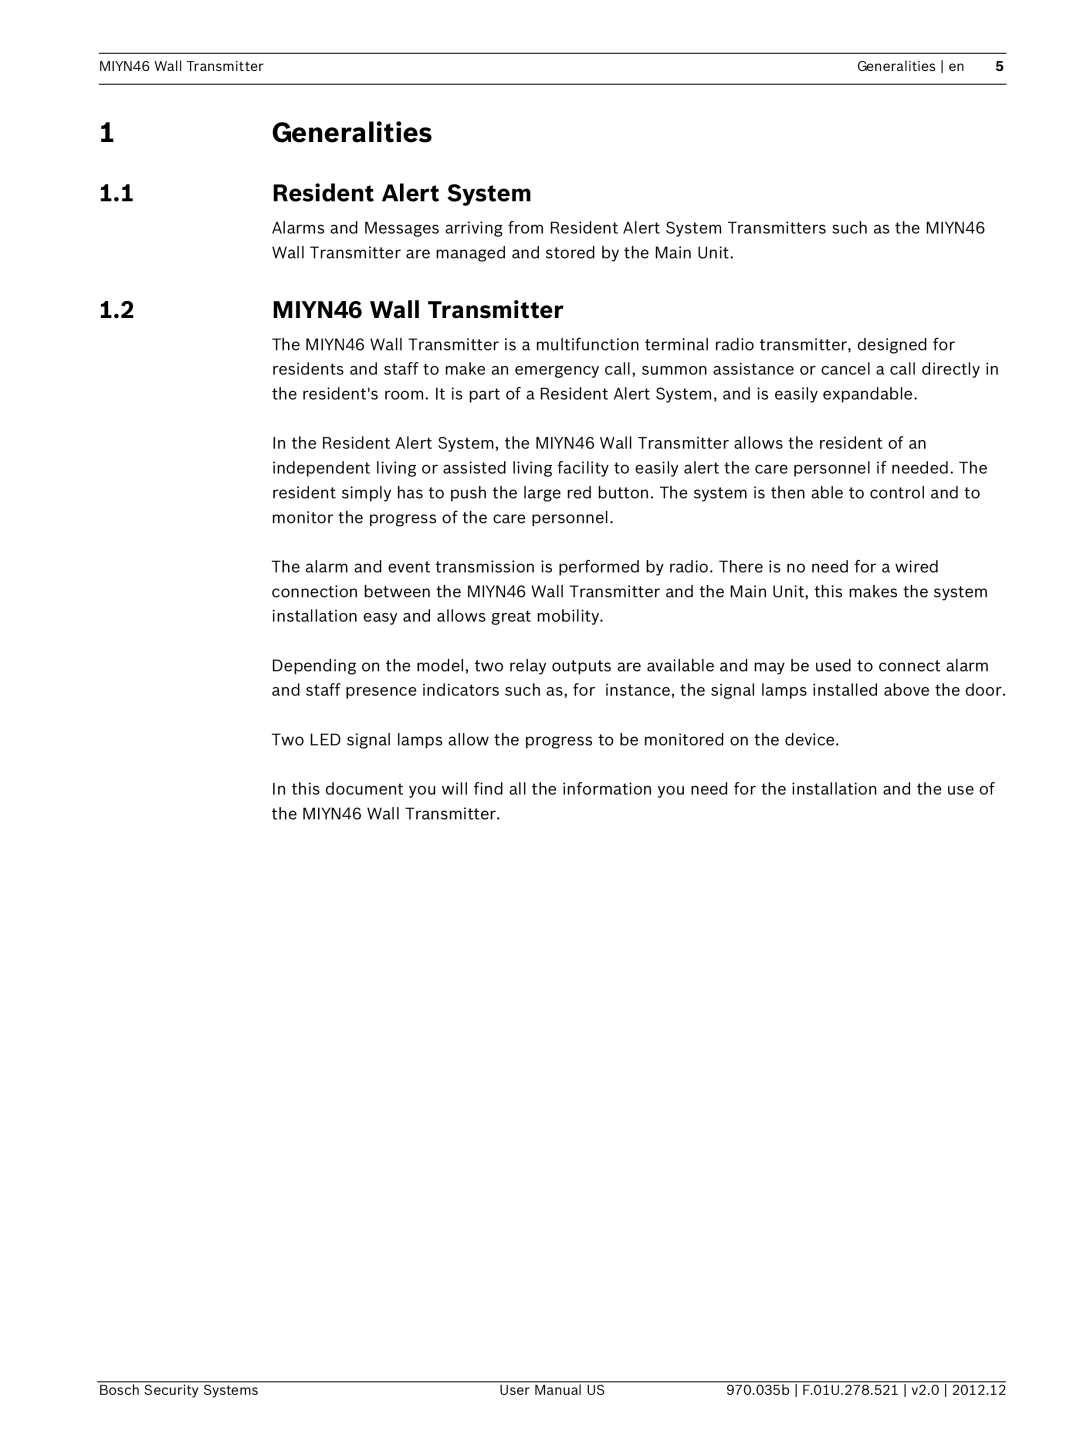 Bosch Appliances user manual Generalities, Resident Alert System, MIYN46 Wall Transmitter 